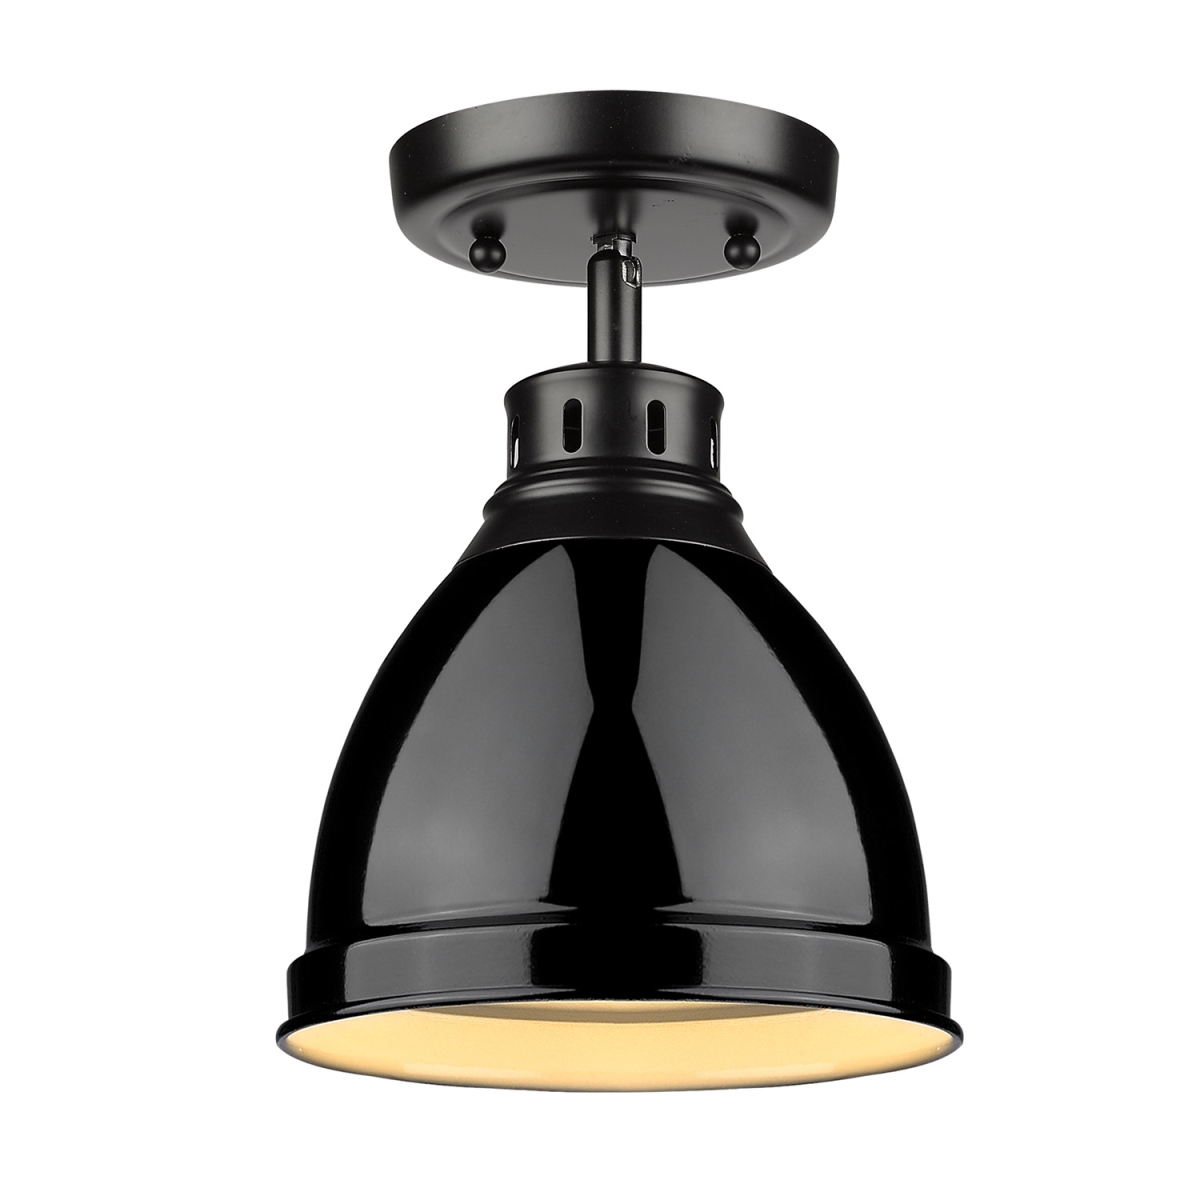 3602-fm Blk-bk Duncan Flush Mount Light With Black Shade, Black